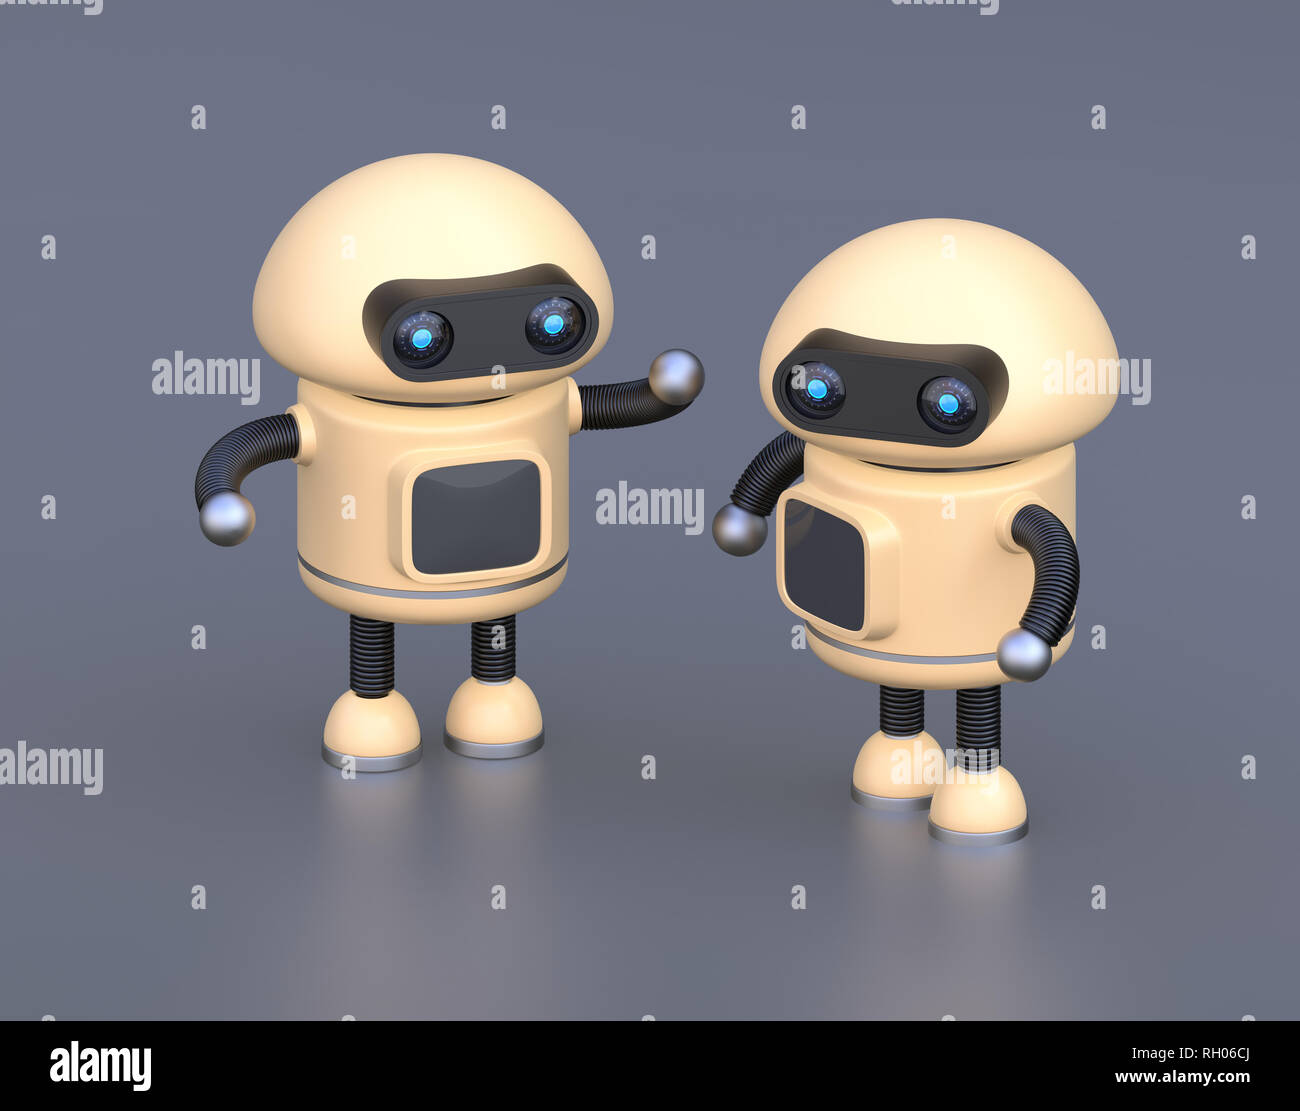 Zwei Roboter auf Reflexion Hintergrund chatten. 3D-Bild. Stockfoto